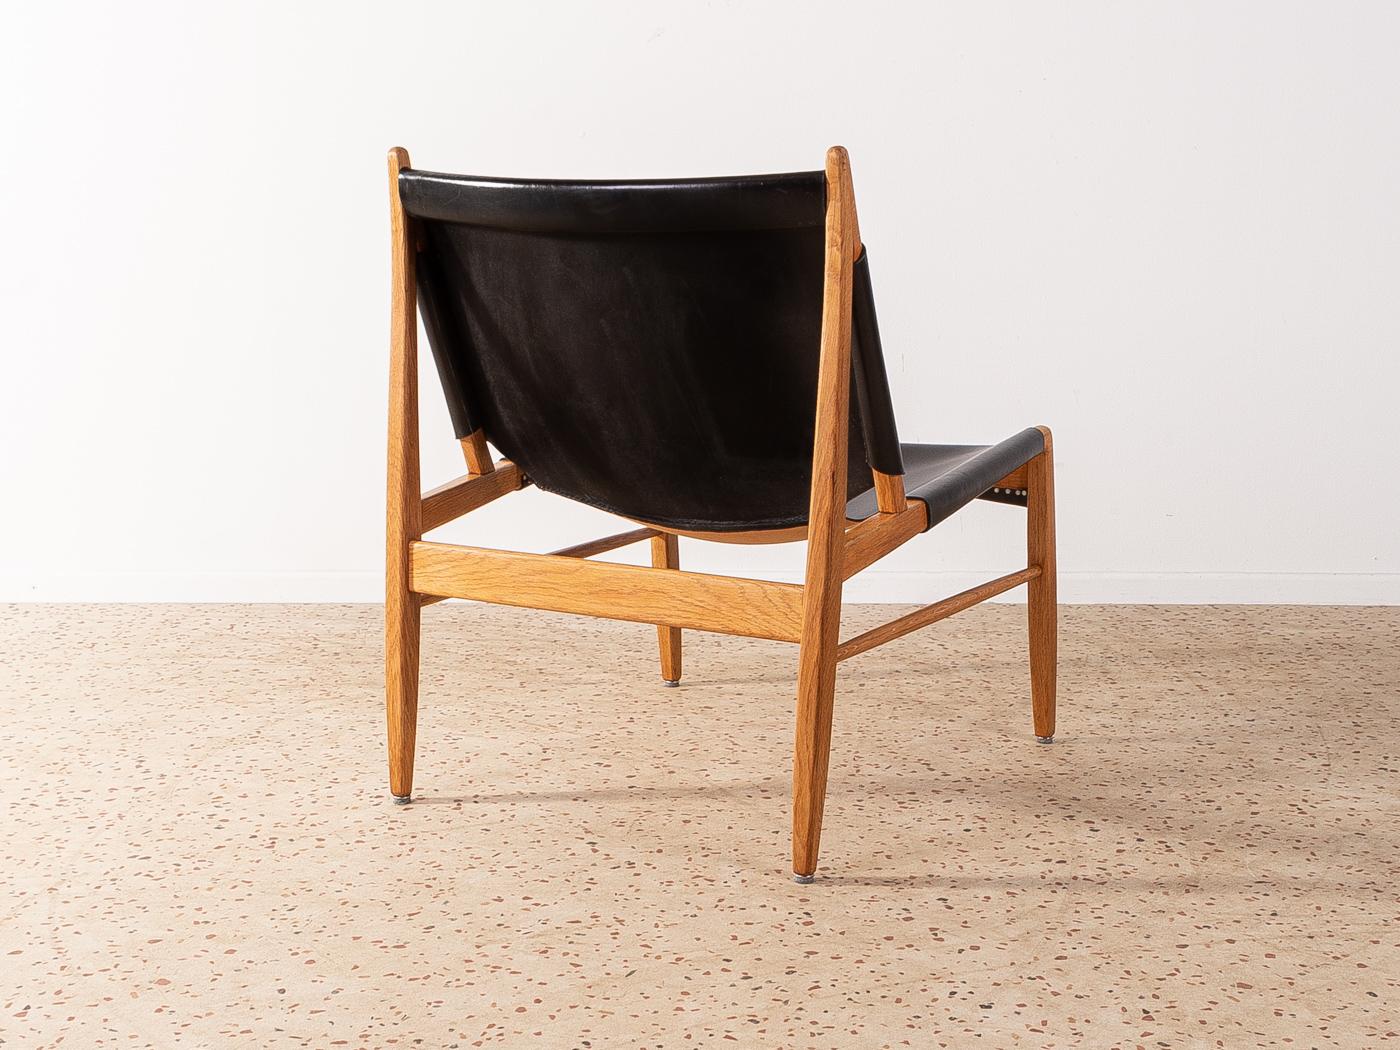 Wunderschöner Sessel, Modell 1192, von Franz Xaver Lutz für WK Möbel aus dem Jahr 1958. Massiver Eichenrahmen mit originalen schwarzen Lederbezügen.

Qualitätsmerkmale:
    vollendetes Design: perfekte Proportionen und sichtbare Liebe zum Detail
   